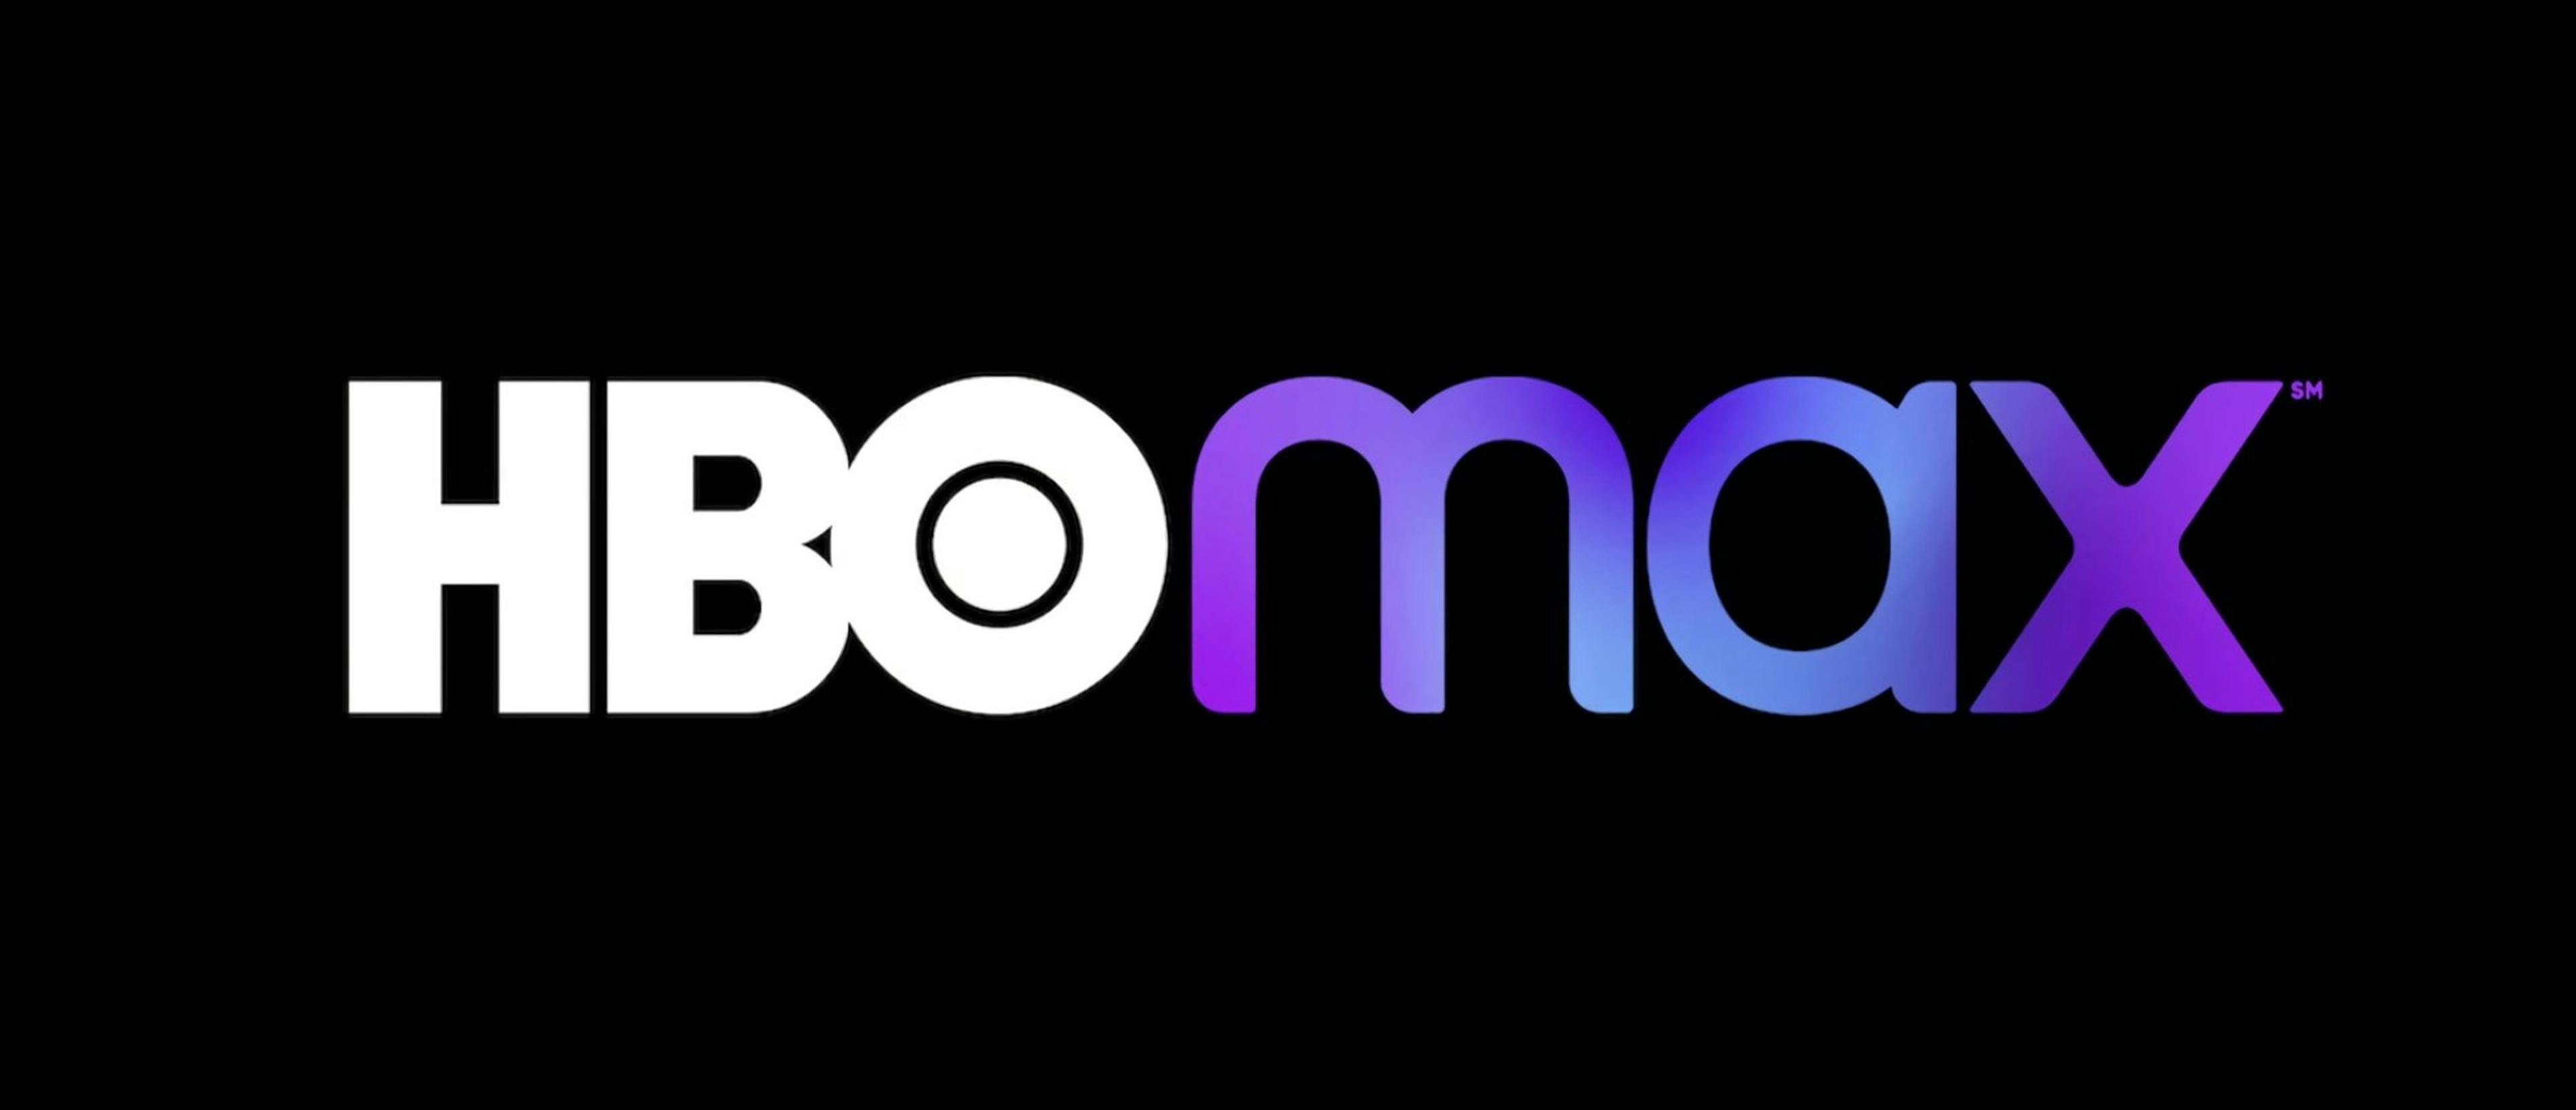 Logotipo de la plataforma HBO Max, que en 2023 cambiará su marca comercial